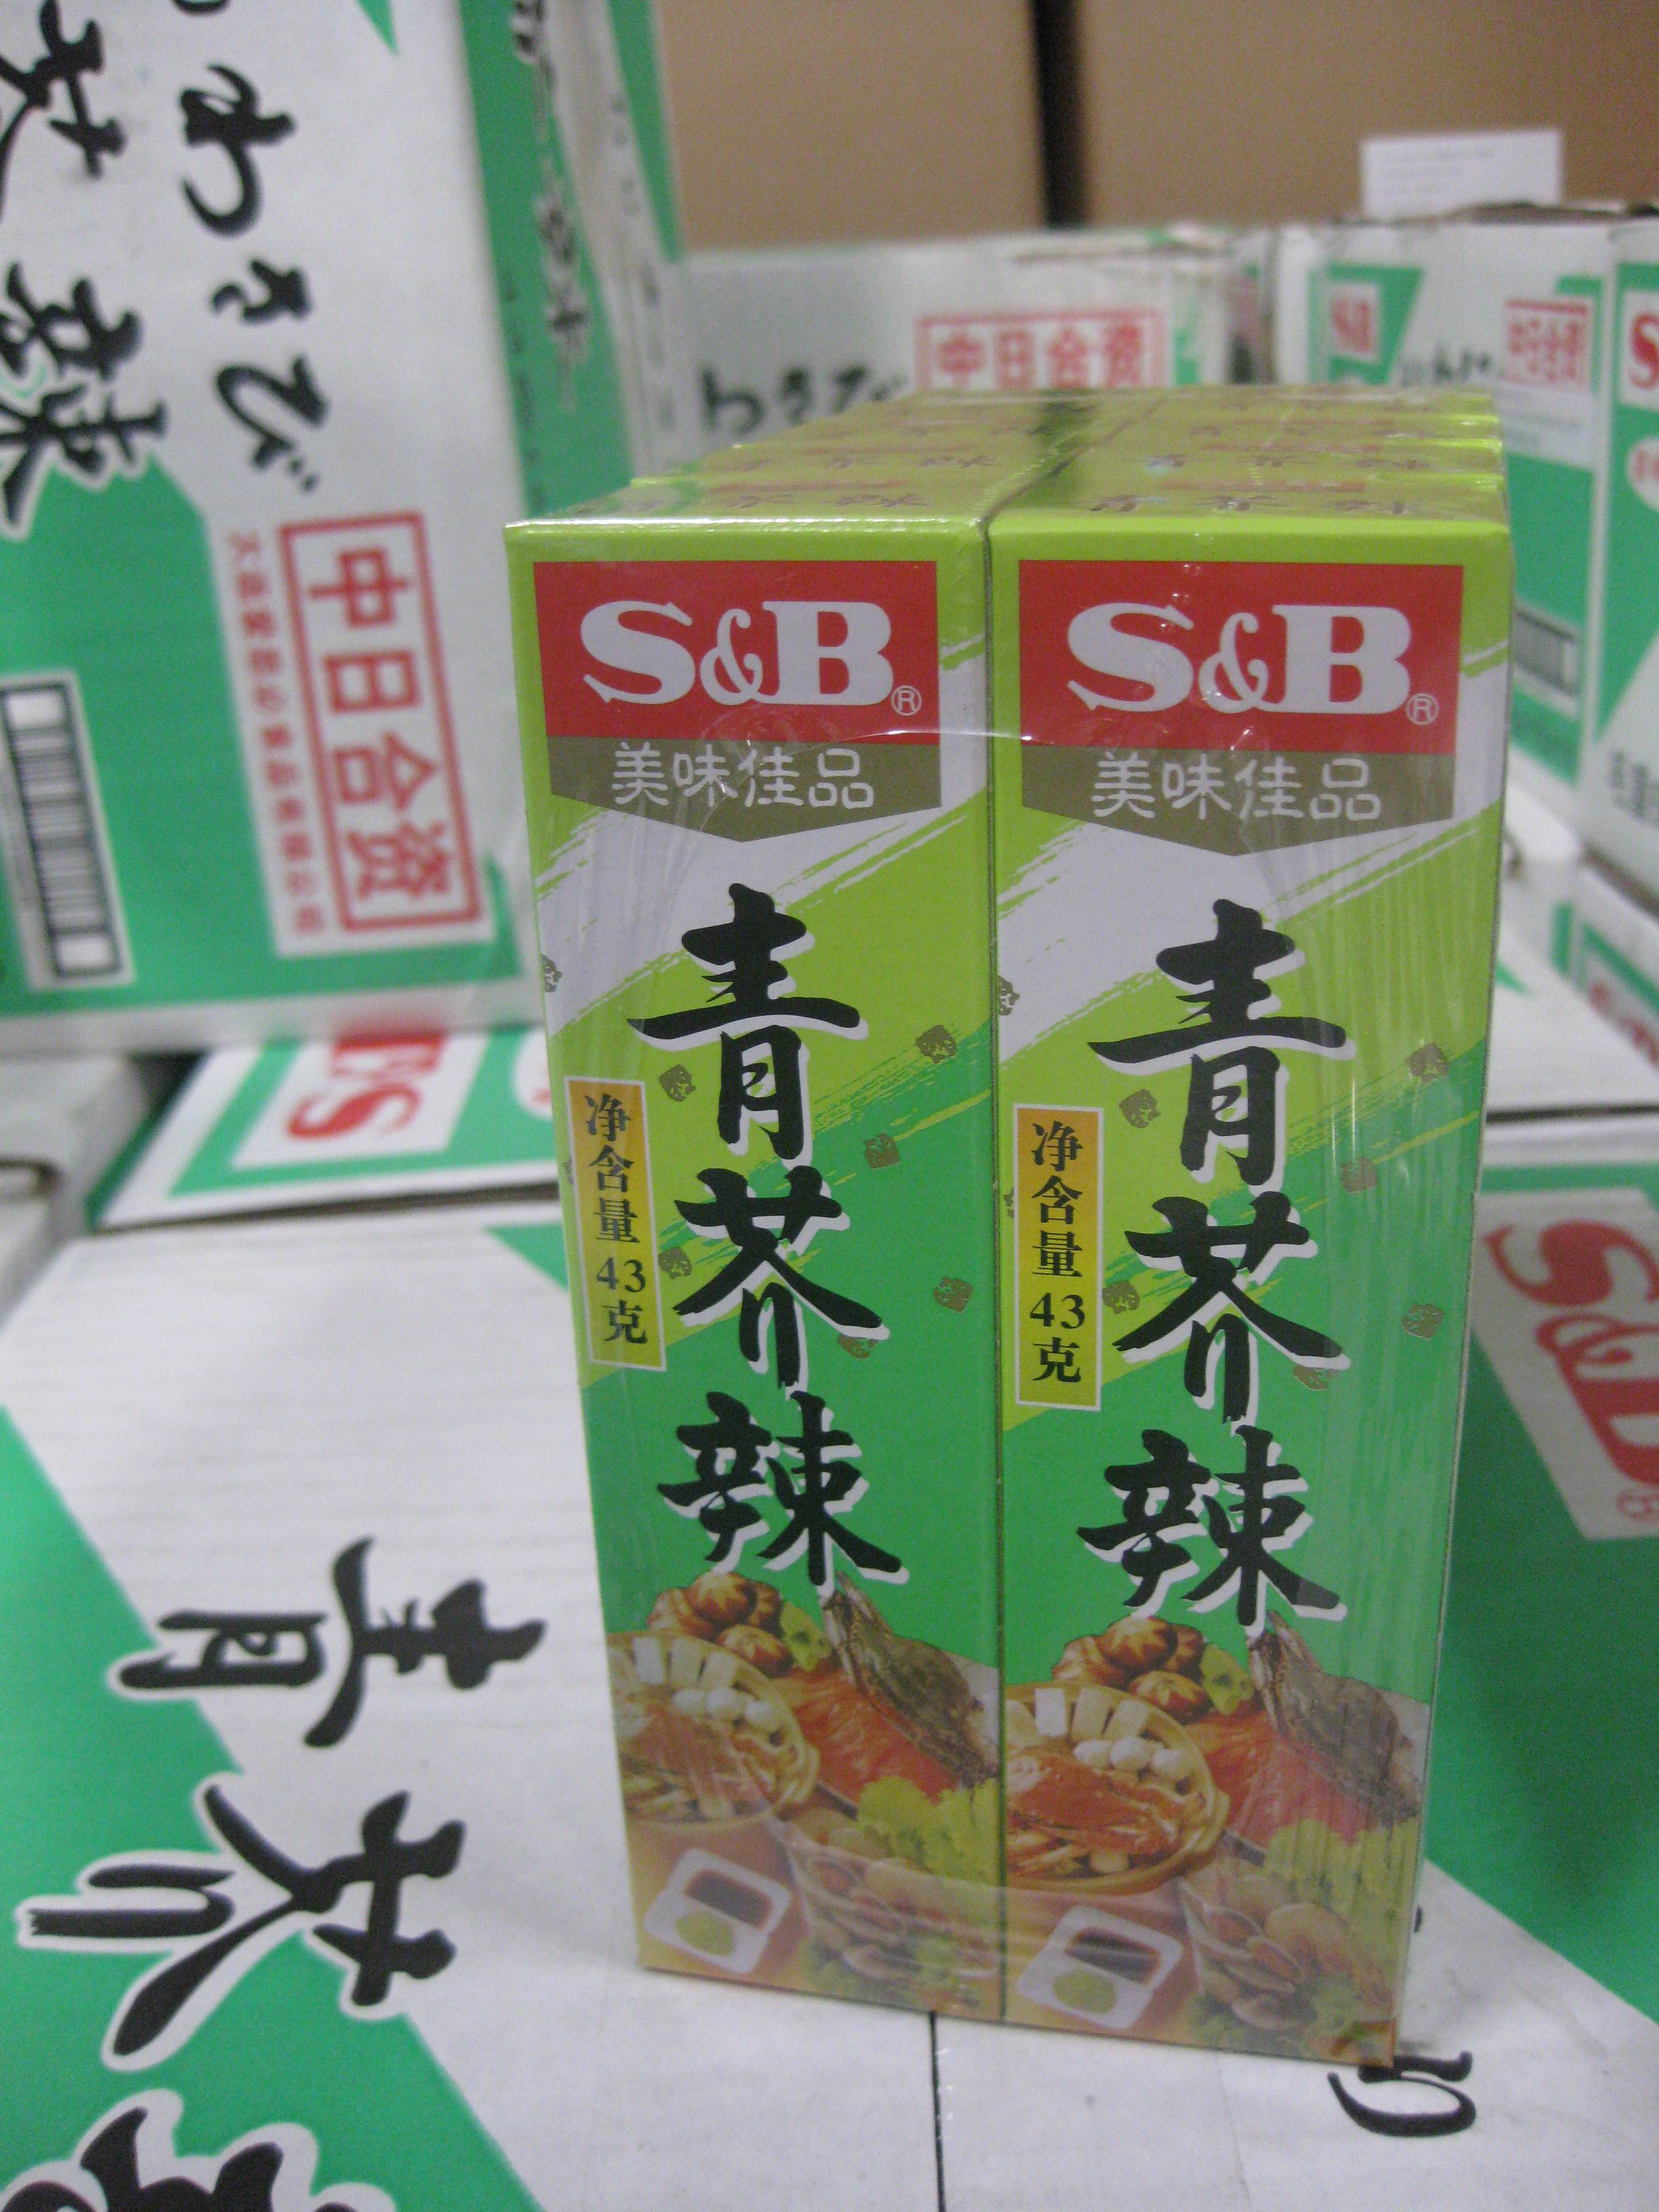 S&B Wasabi paste